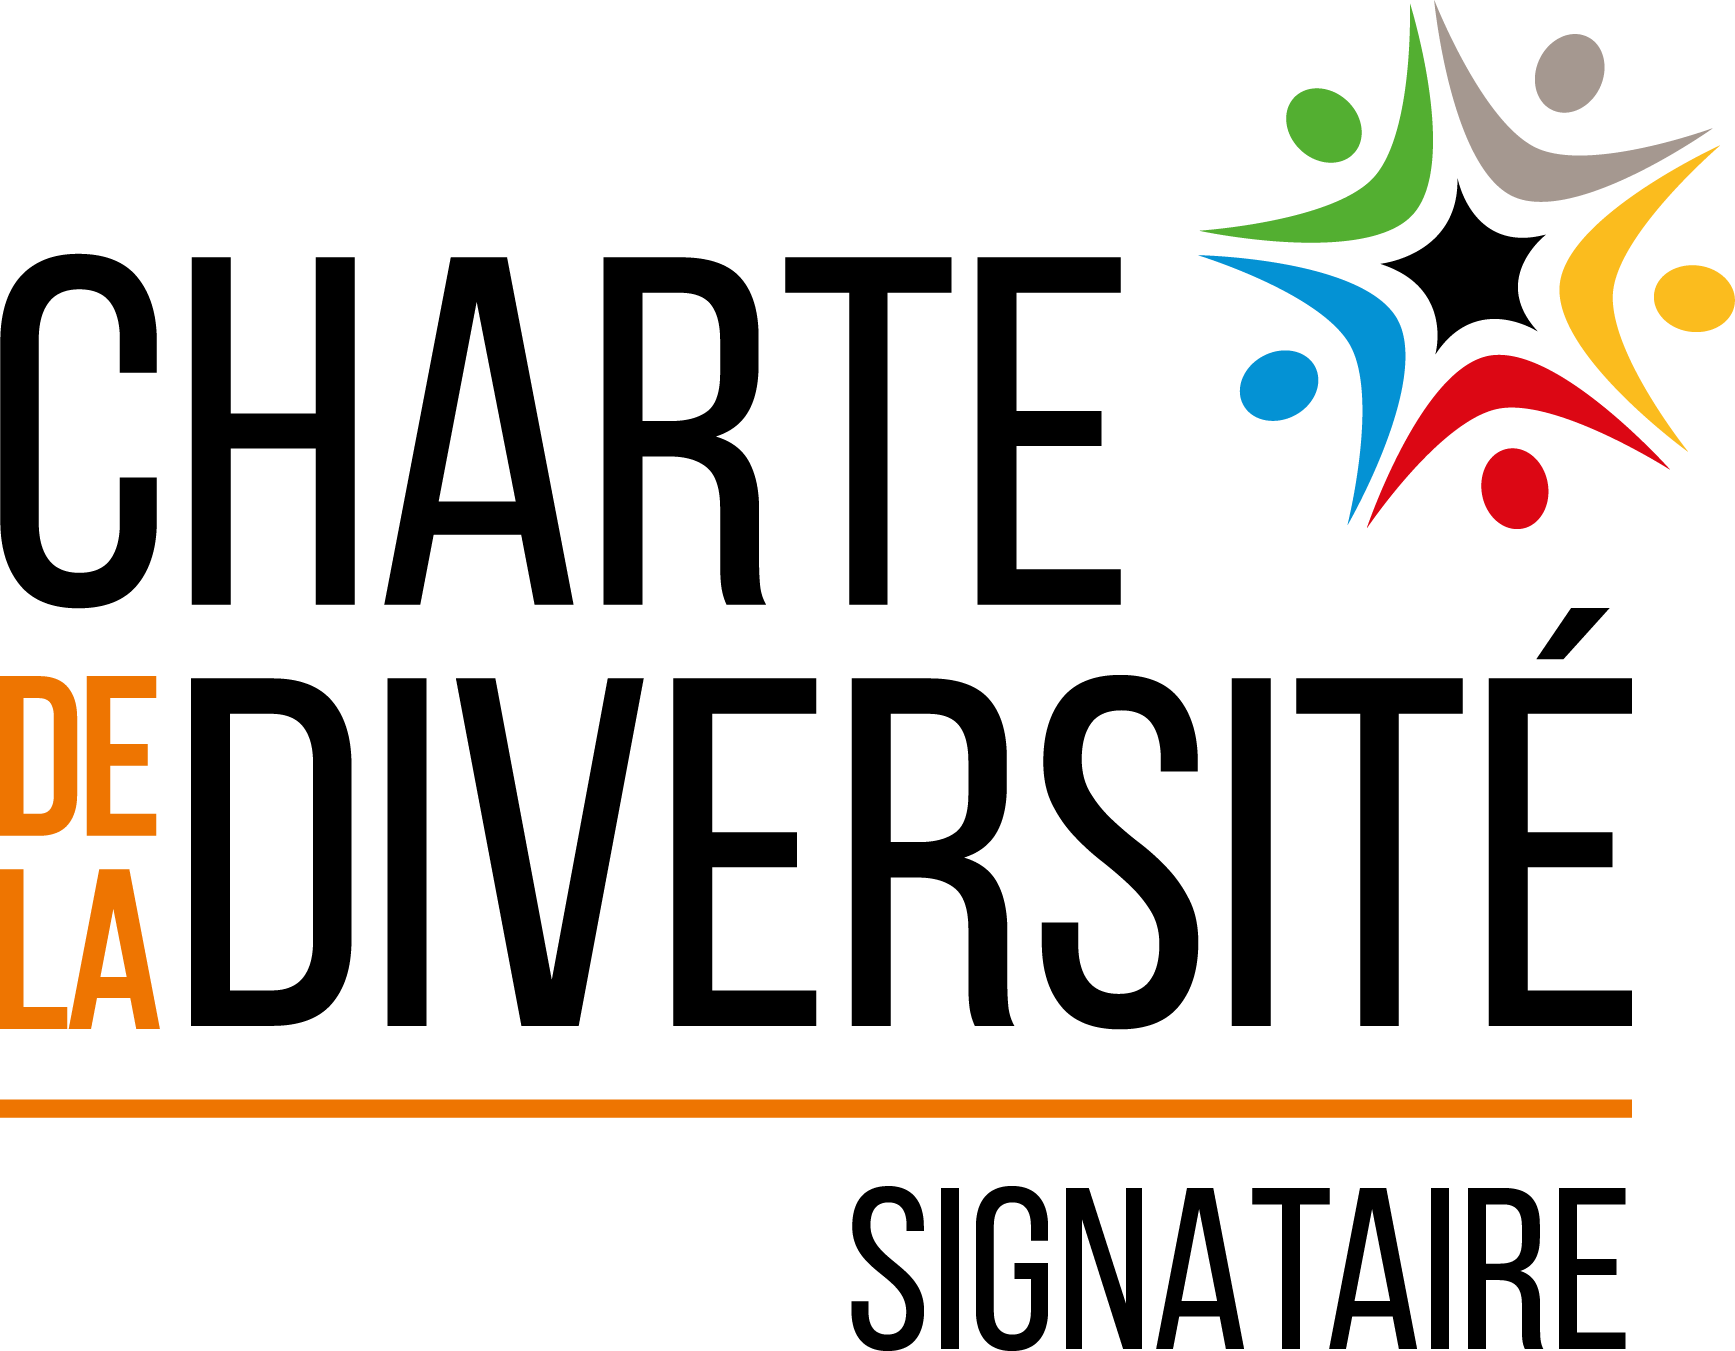 charte de la diversité